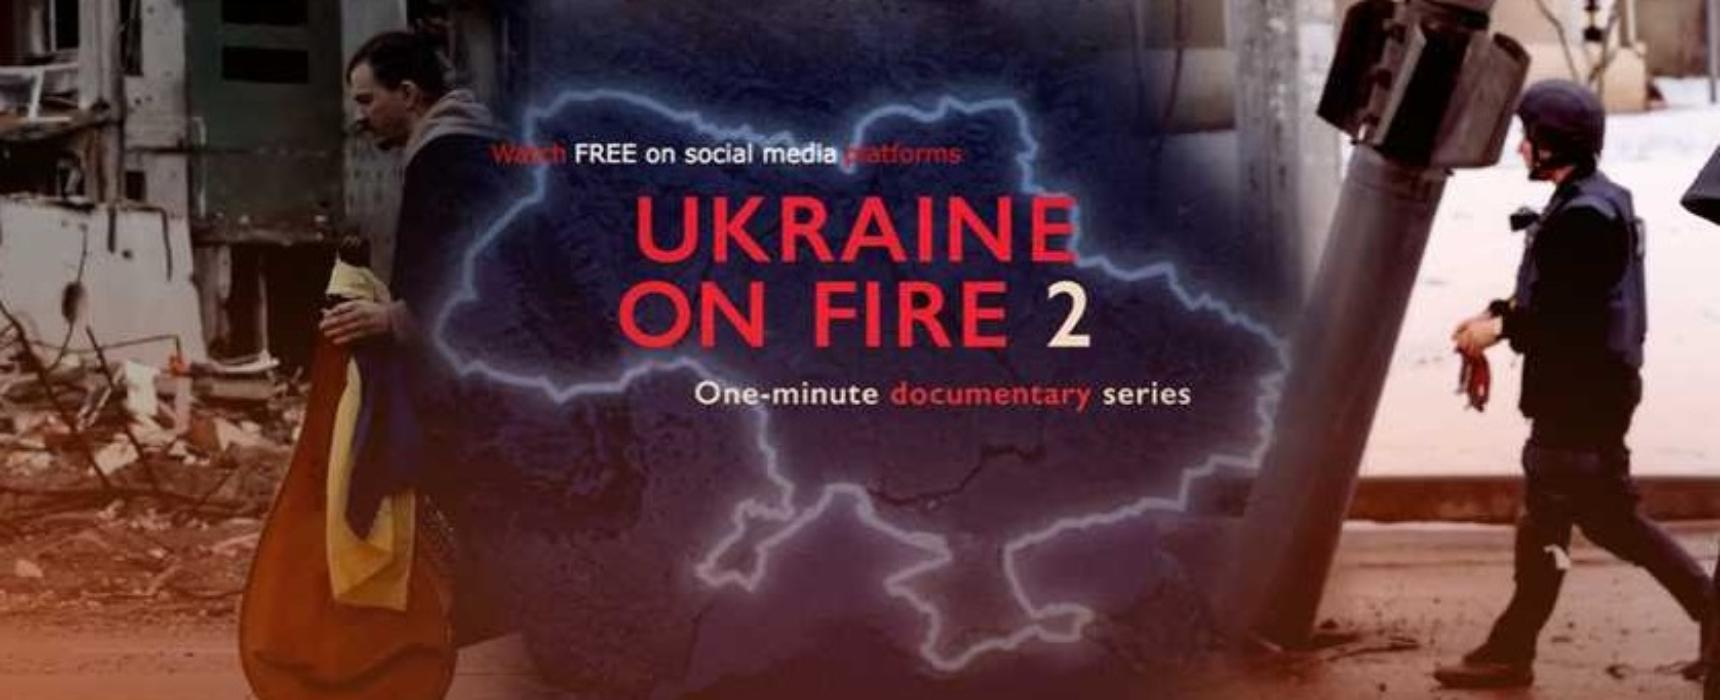 Фільми, які варто переглянути кожному українцю та іноземню про Україну: список від IMDb